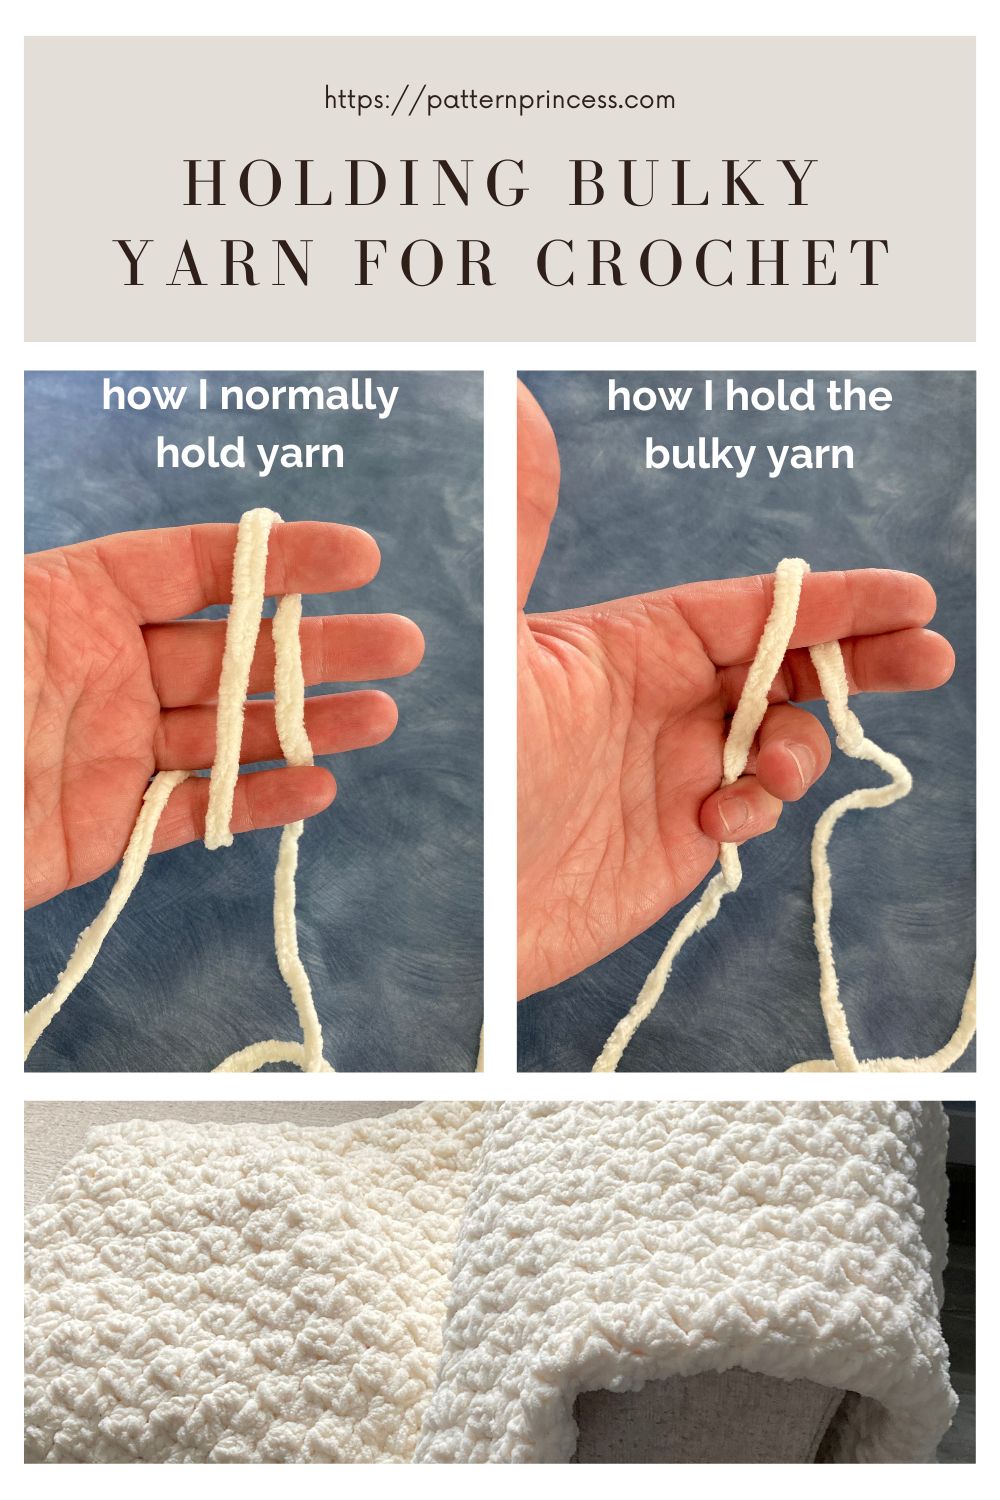 Holding Bulky yarn for Crochet